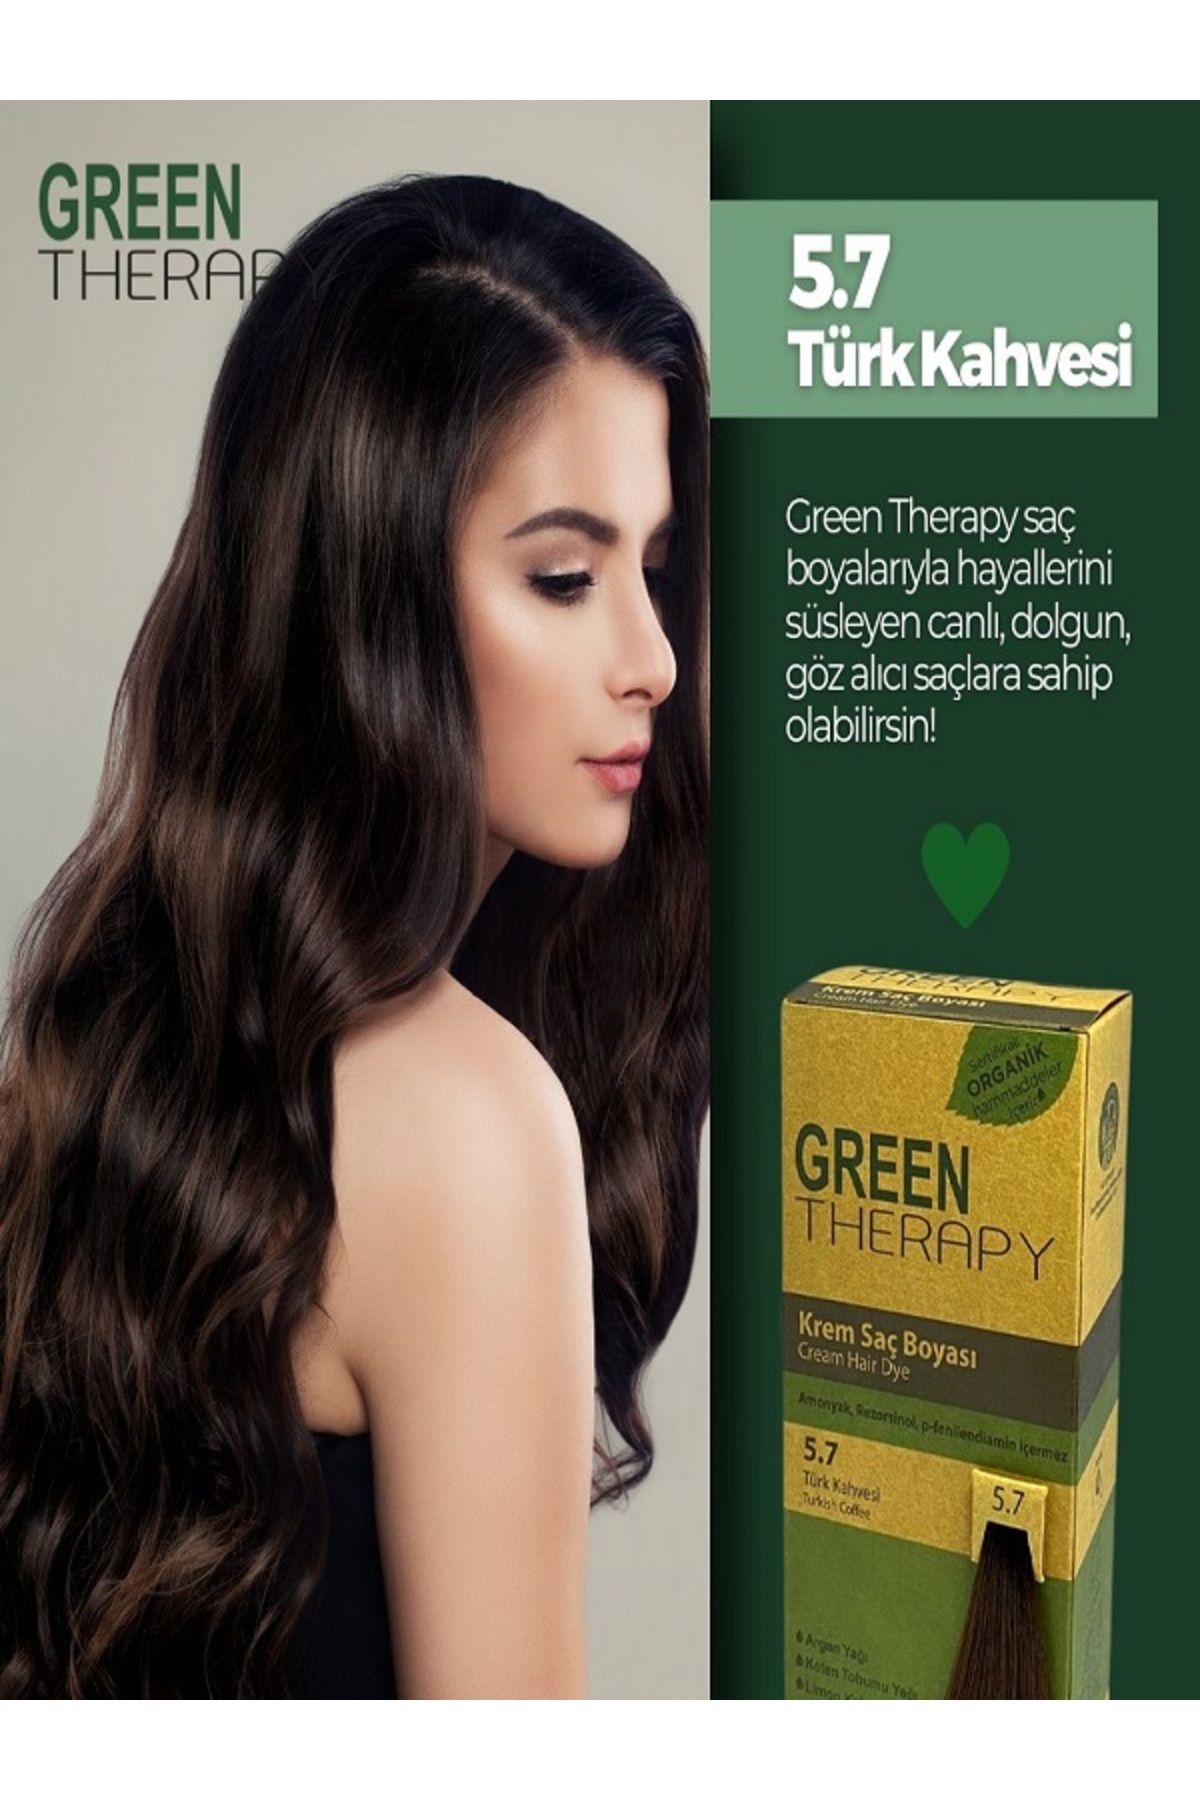 Green Therapy 5.7 Türk Kahvesi Saç Boyası..bigüzellik130424013